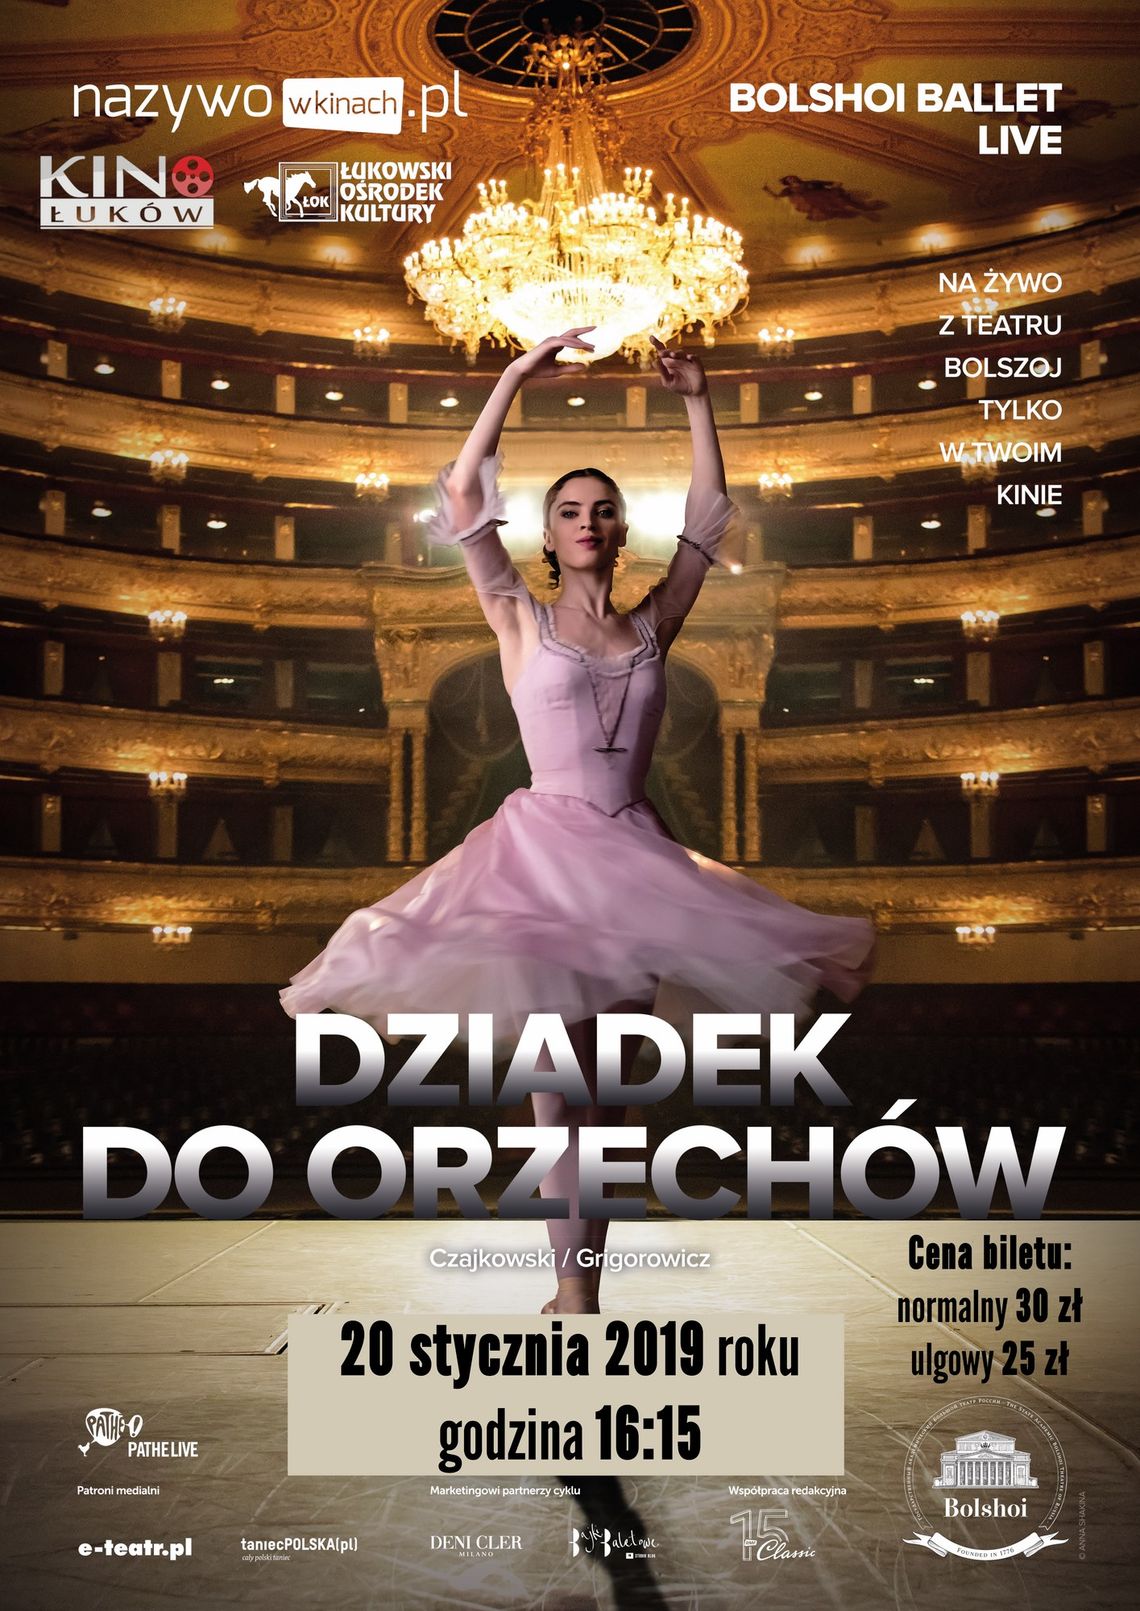 Retransmisja spektaklu baletowego z Teatru Bolszoj "Dziadek do Orzechów" /20 stycznia 2019